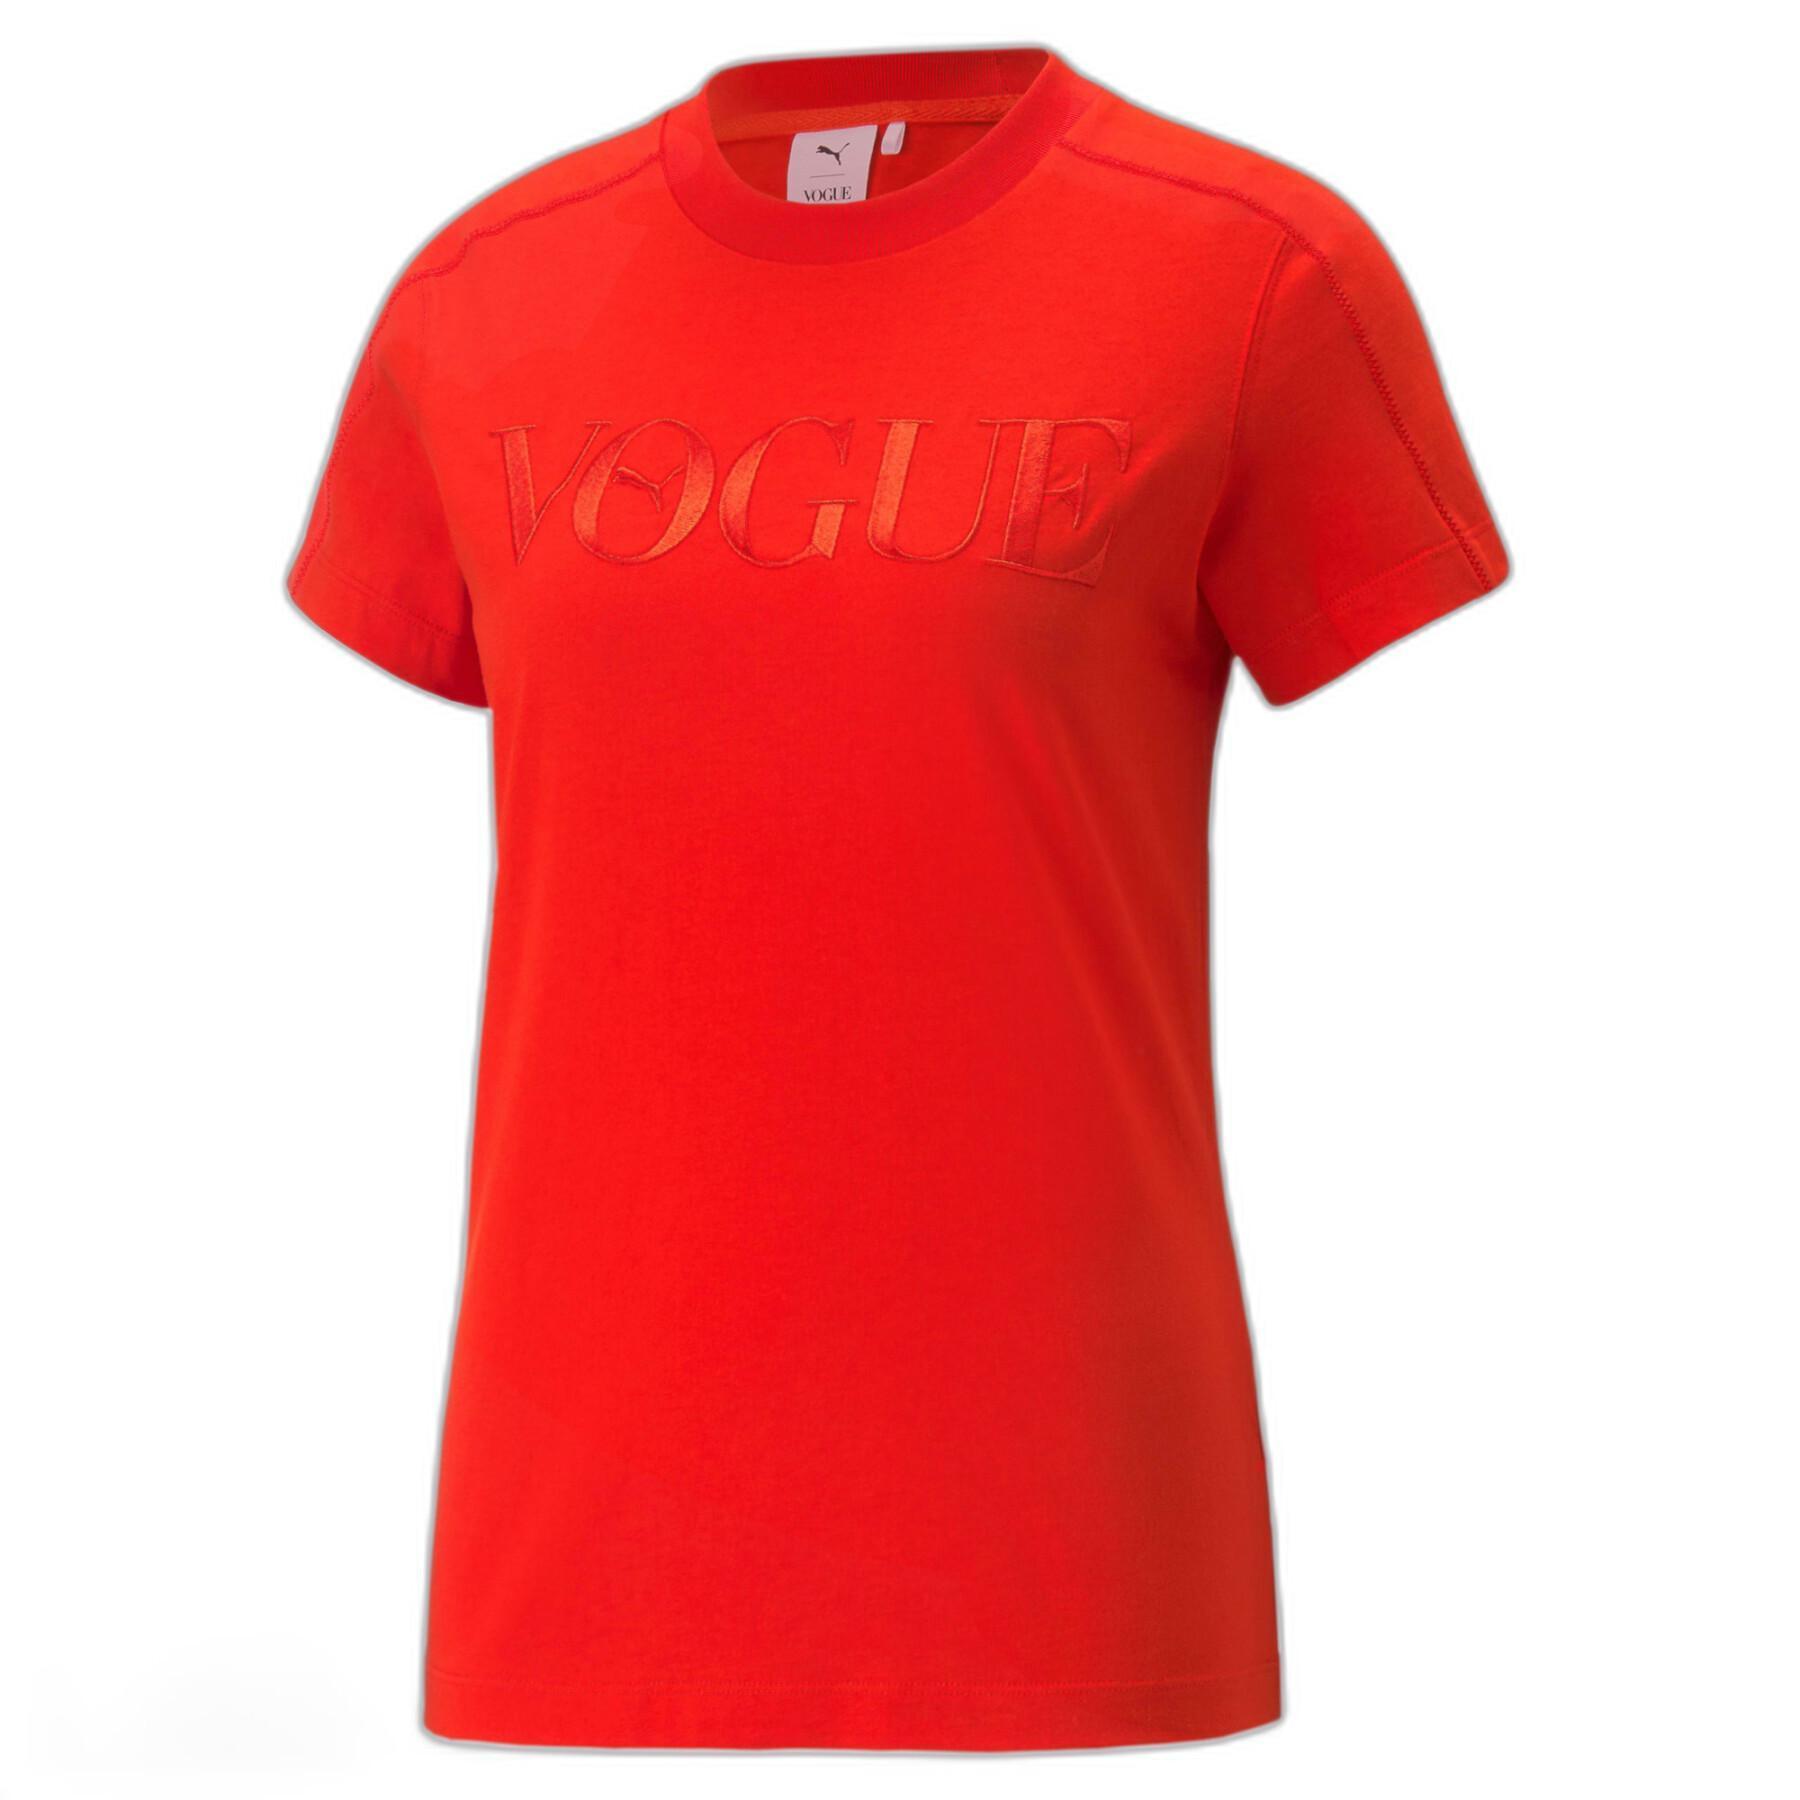 Regular T-shirt for women Puma X Vogue